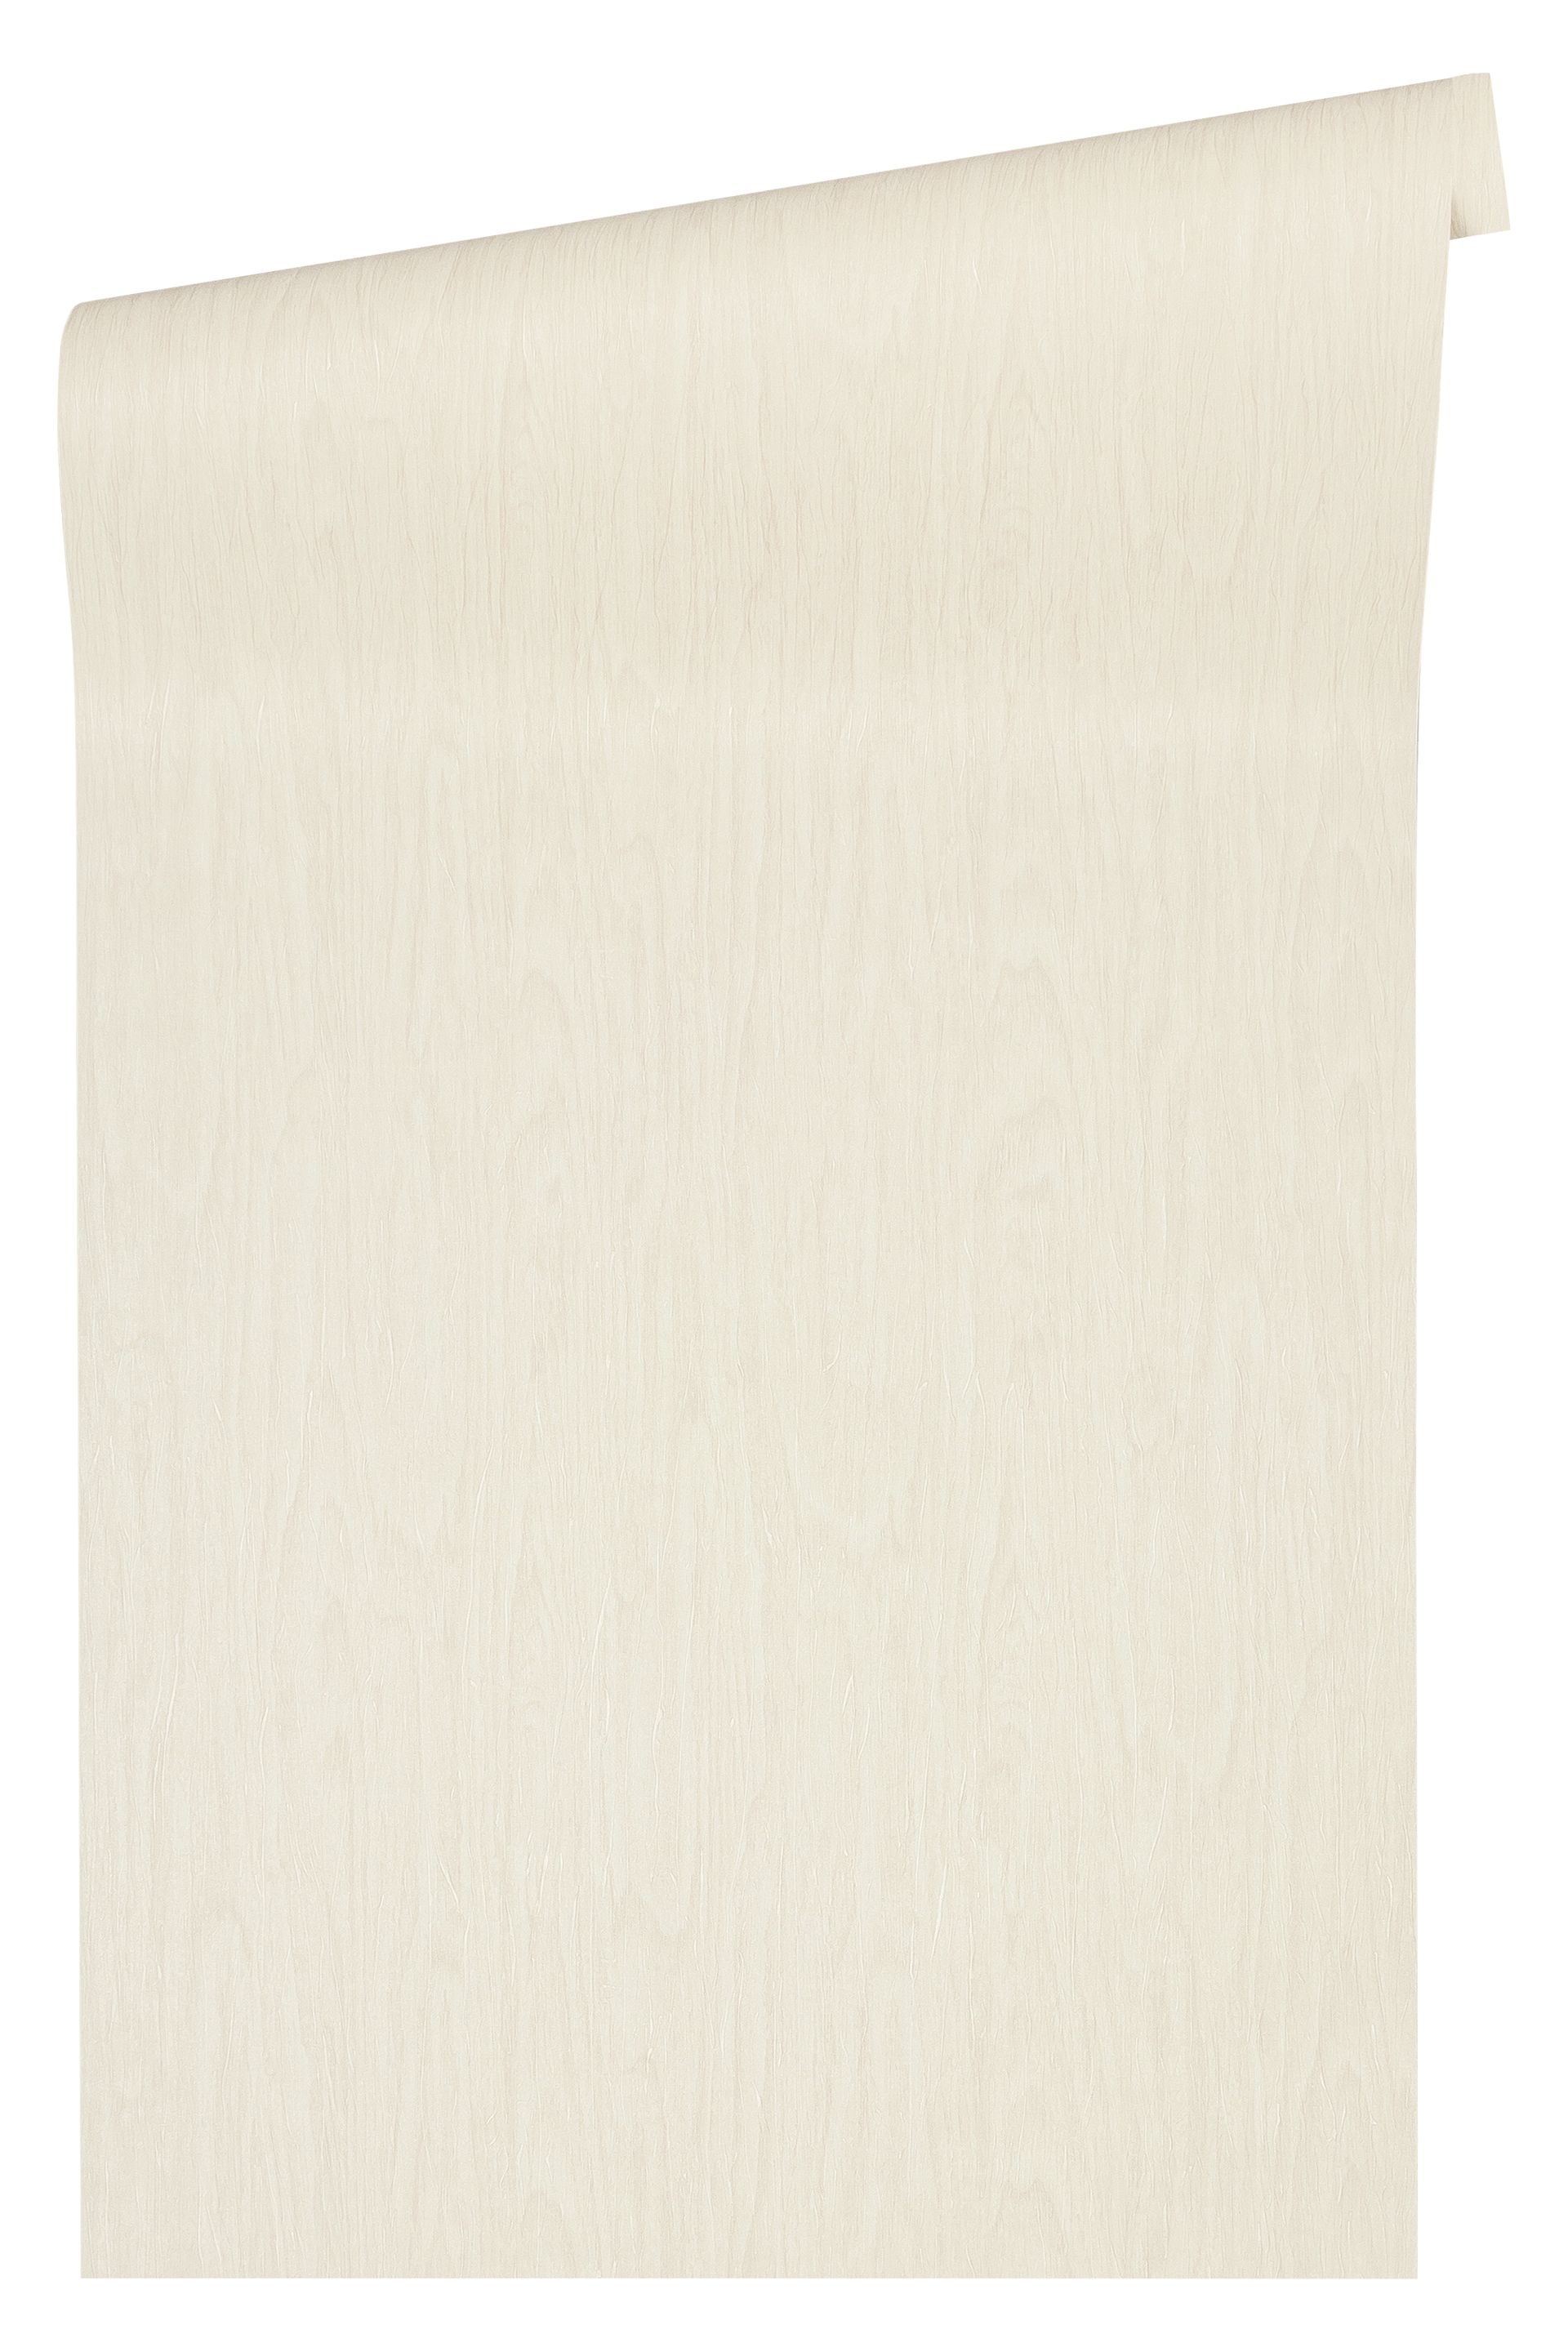 Versace wallpaper Versace 4, Tapete in Holzoptik, beige, creme 370525